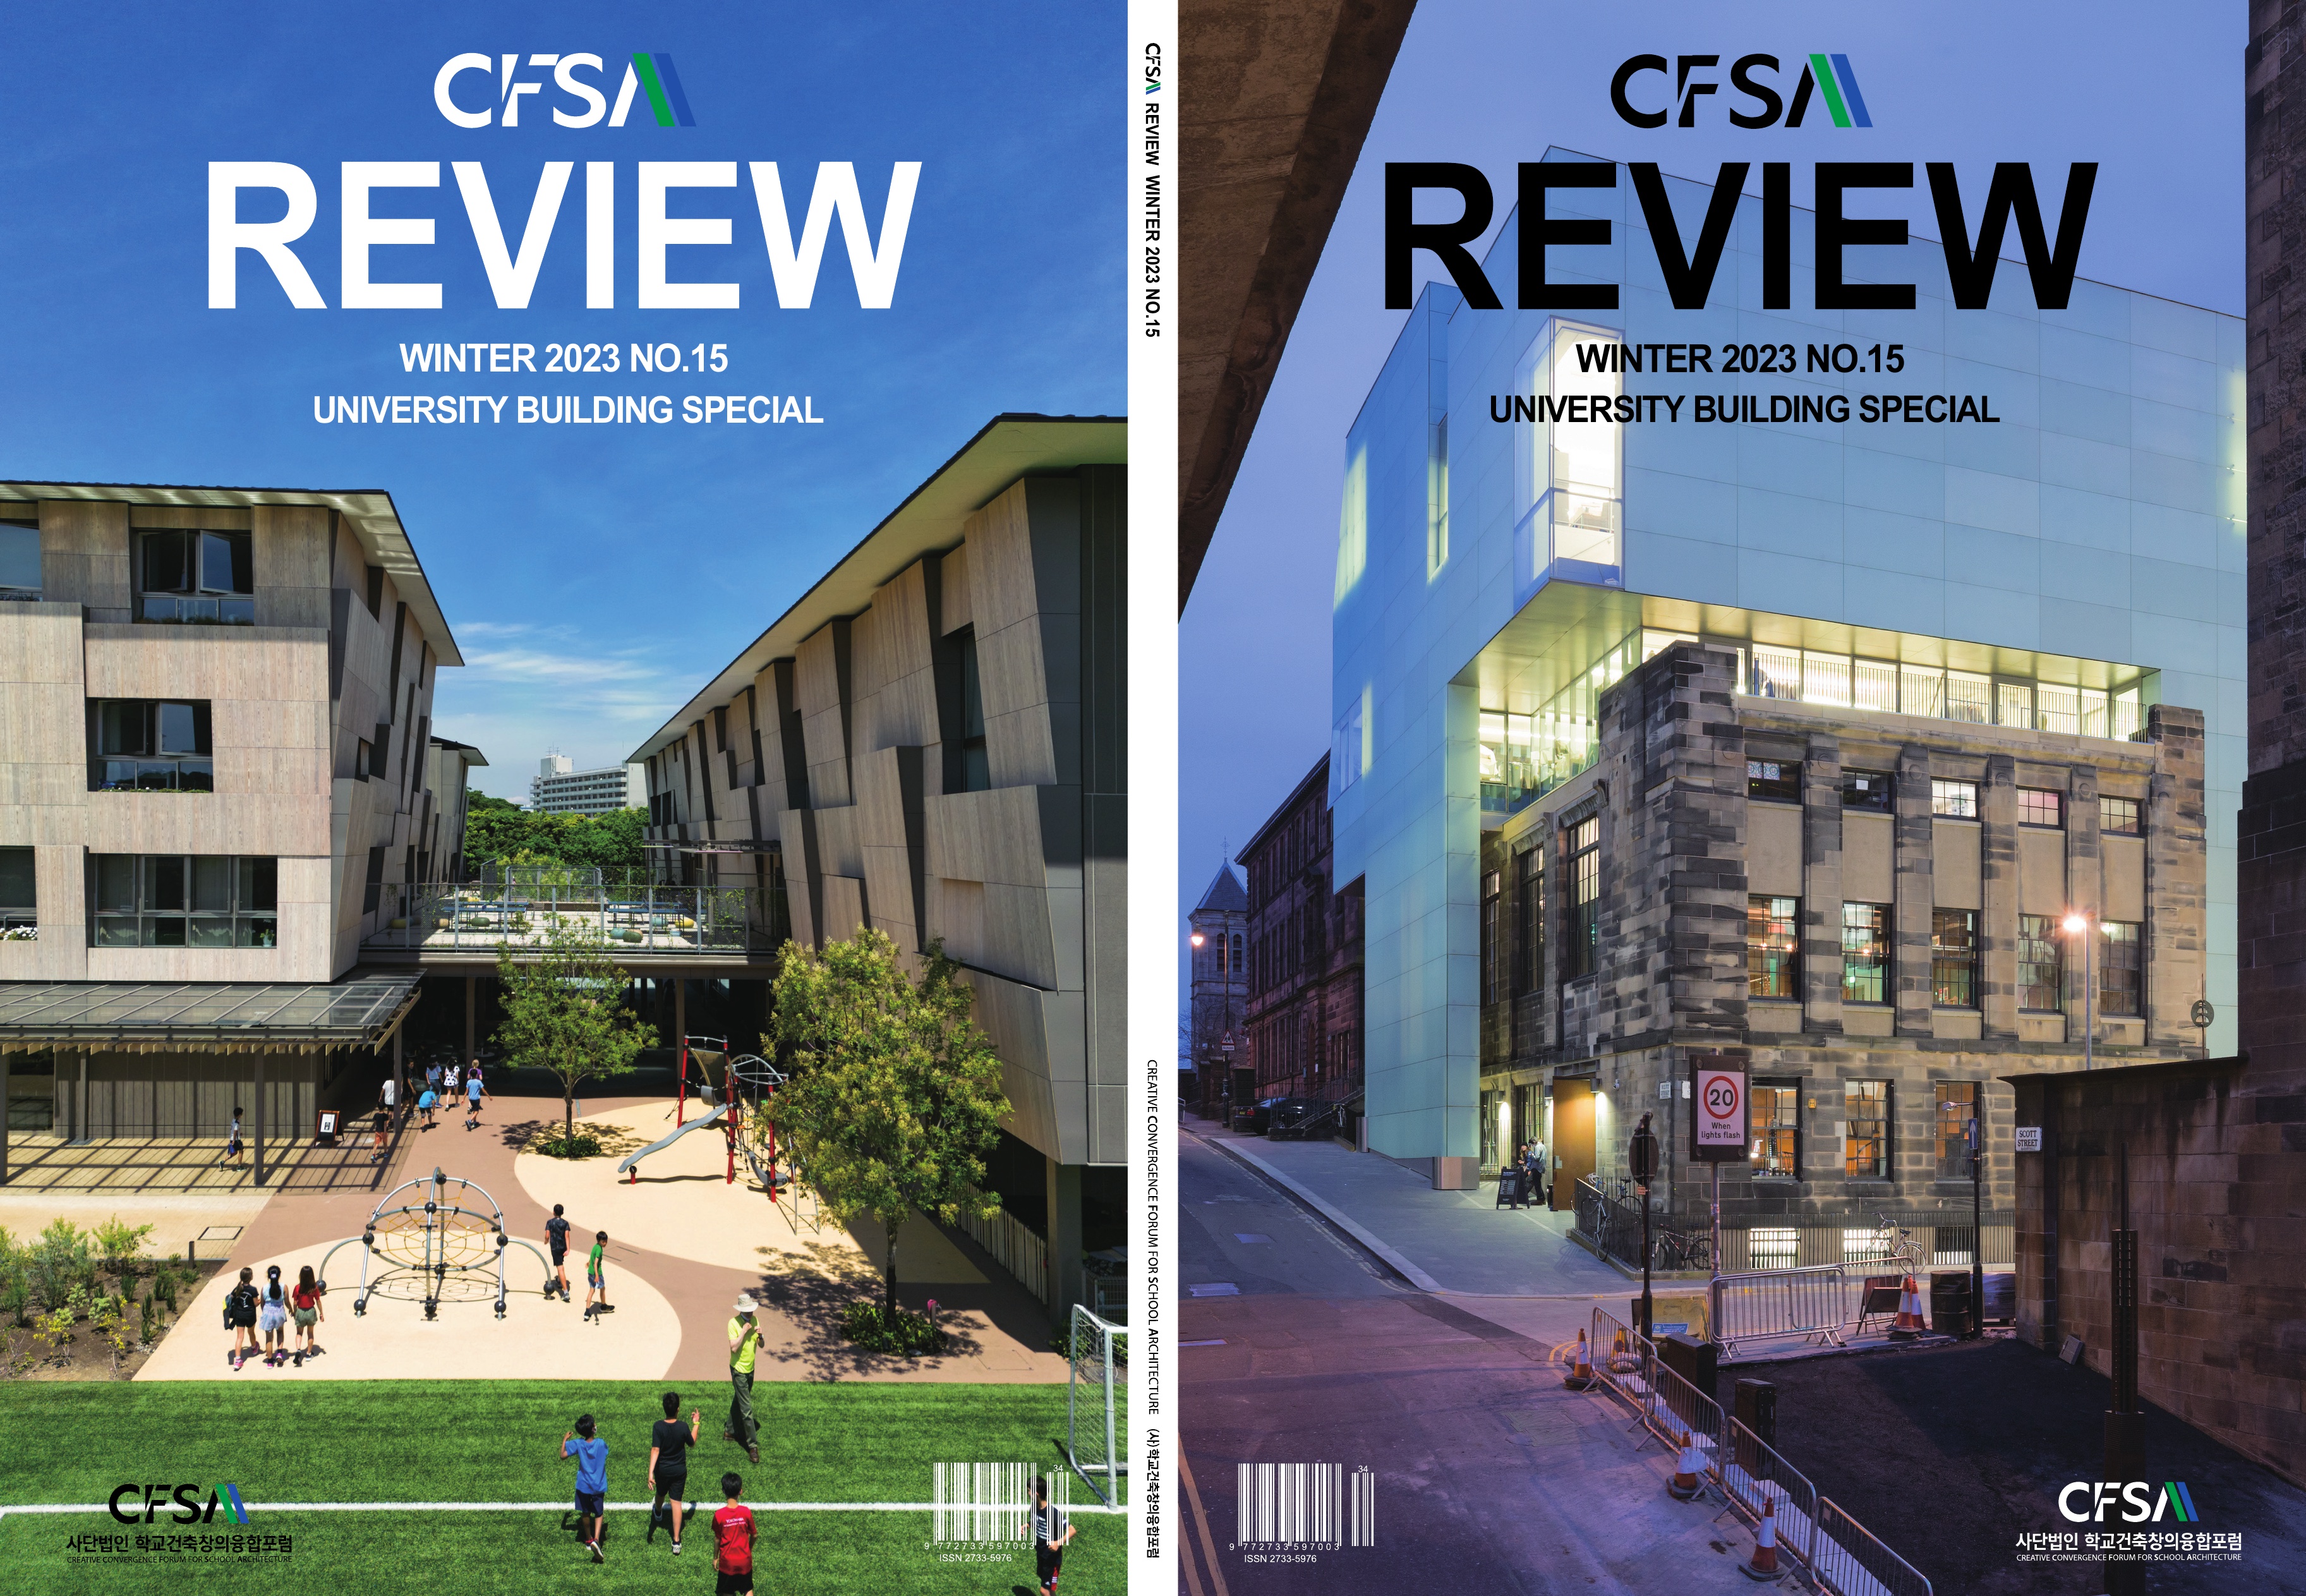 CFSA REVIEW WINTER 2023 NO.15